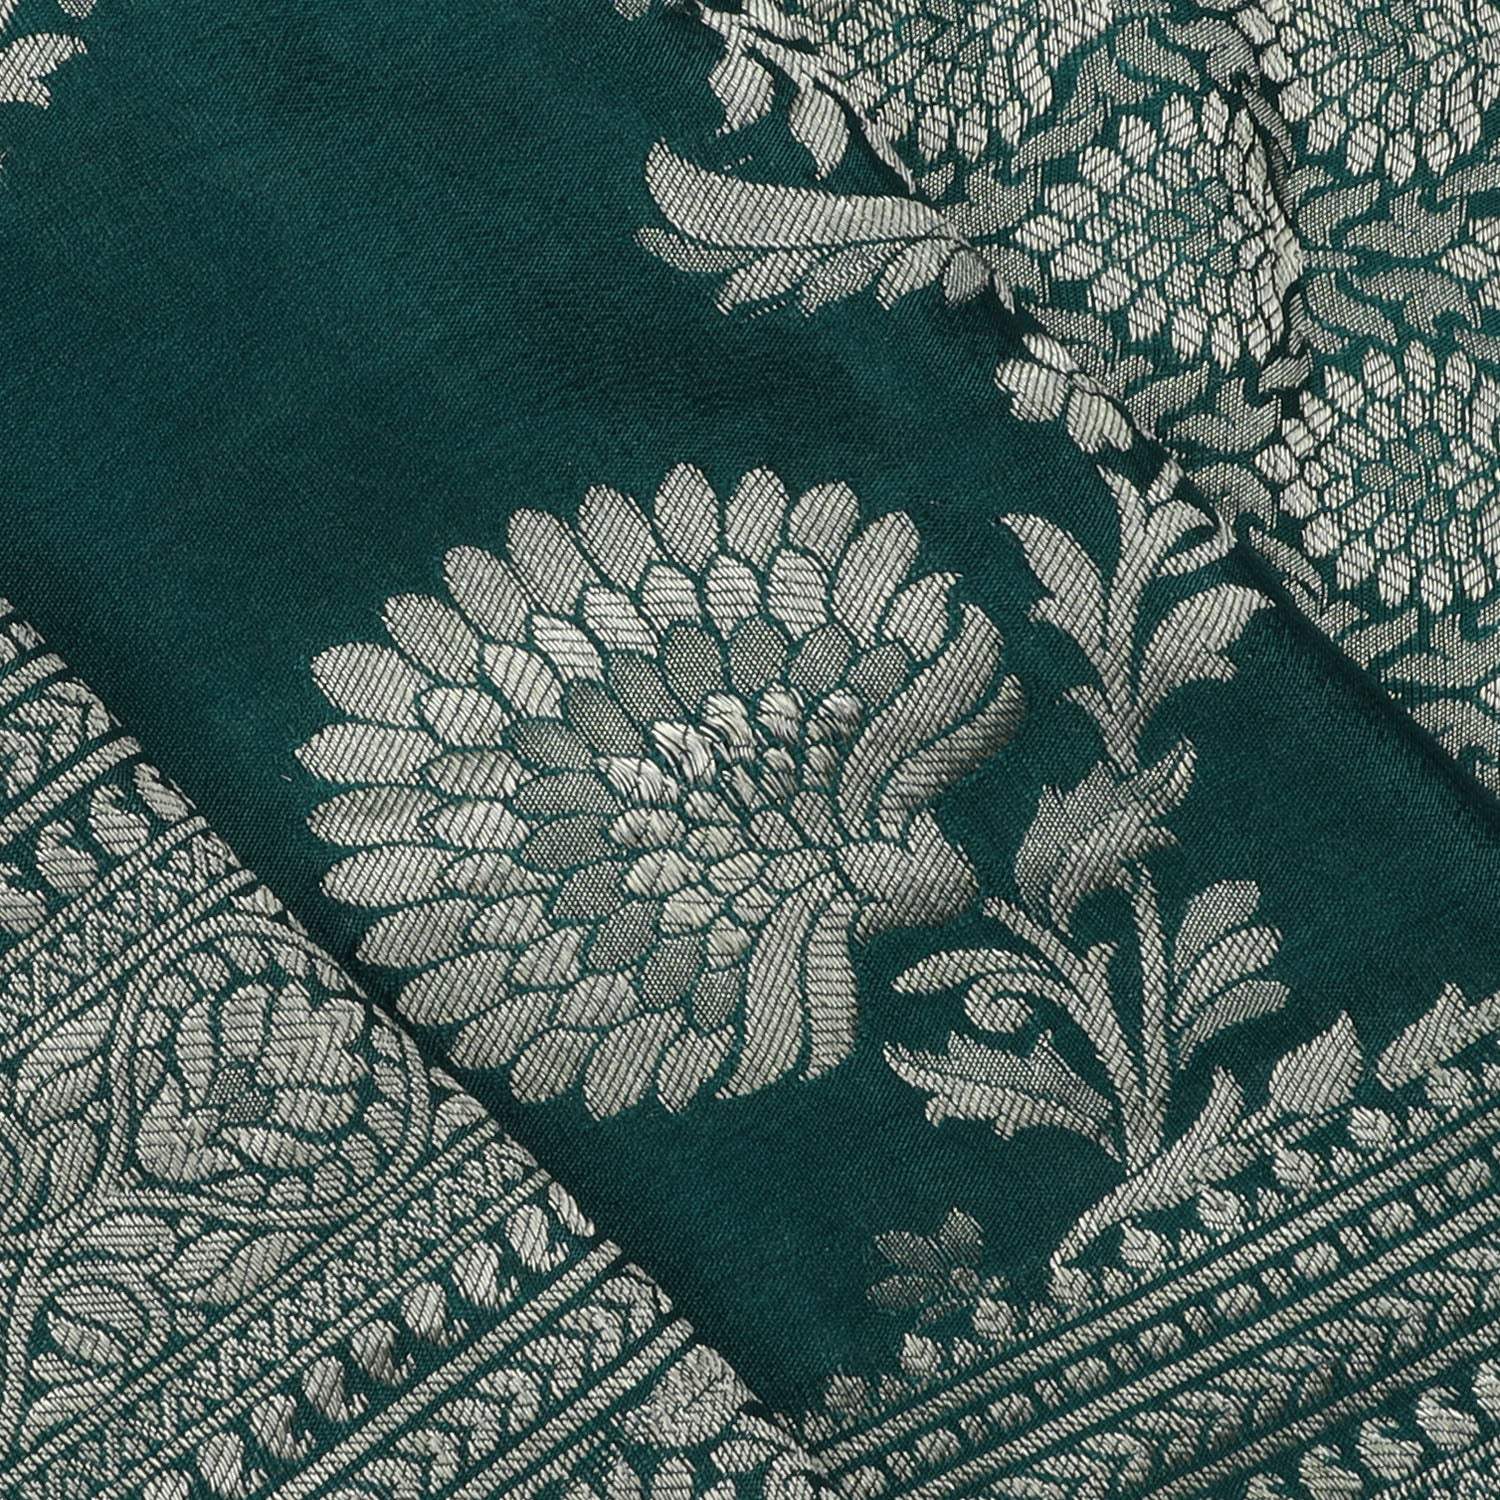 Deep Green Banarasi Silk Saree With Floral Jaal Design - Singhania's